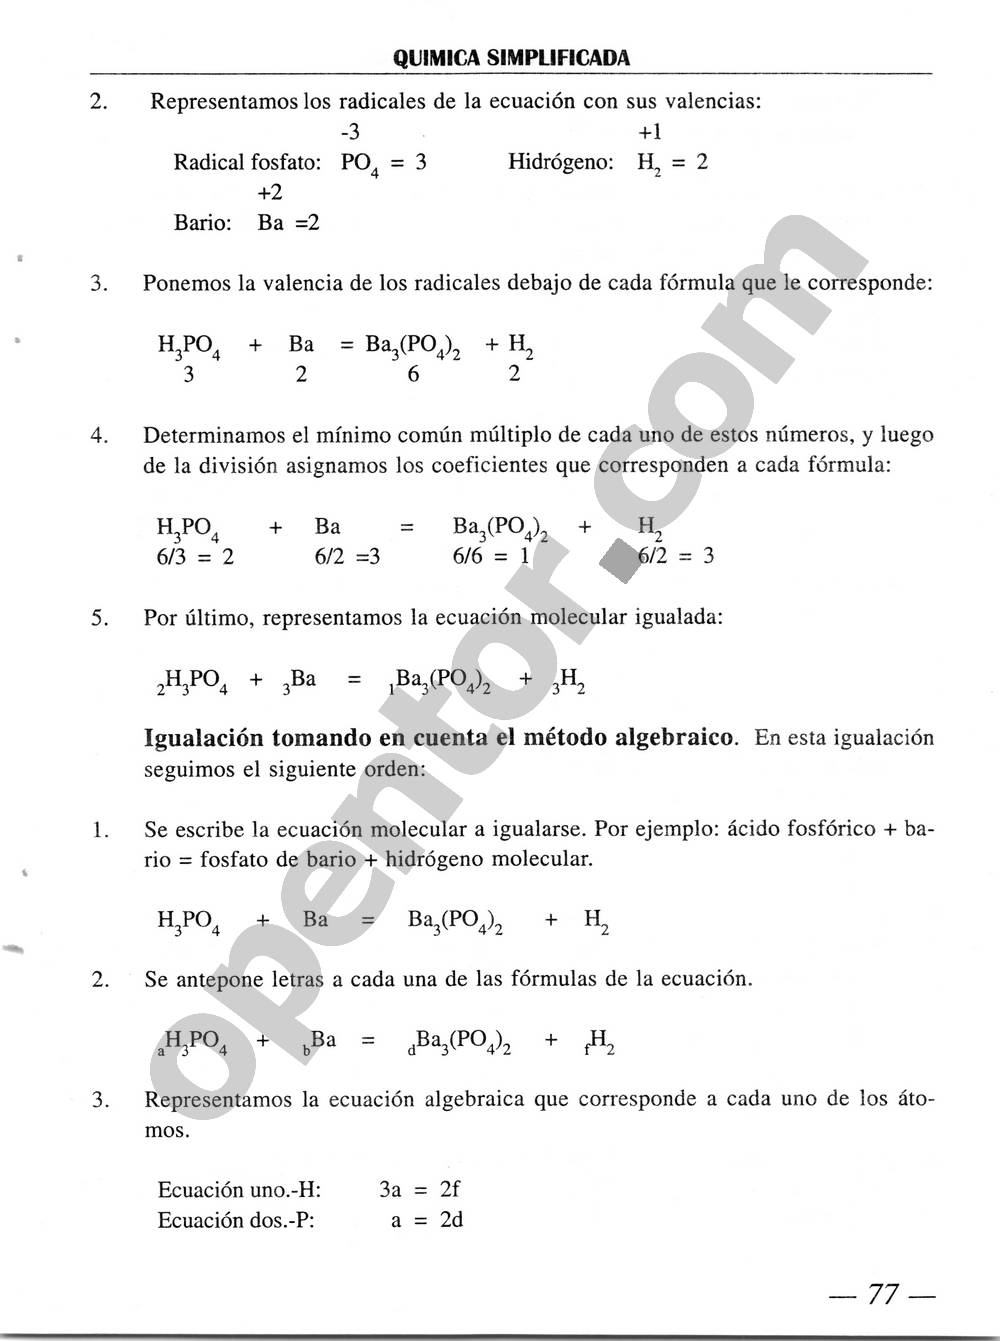 Química Simplificada de Diómedes Solano - Página 77